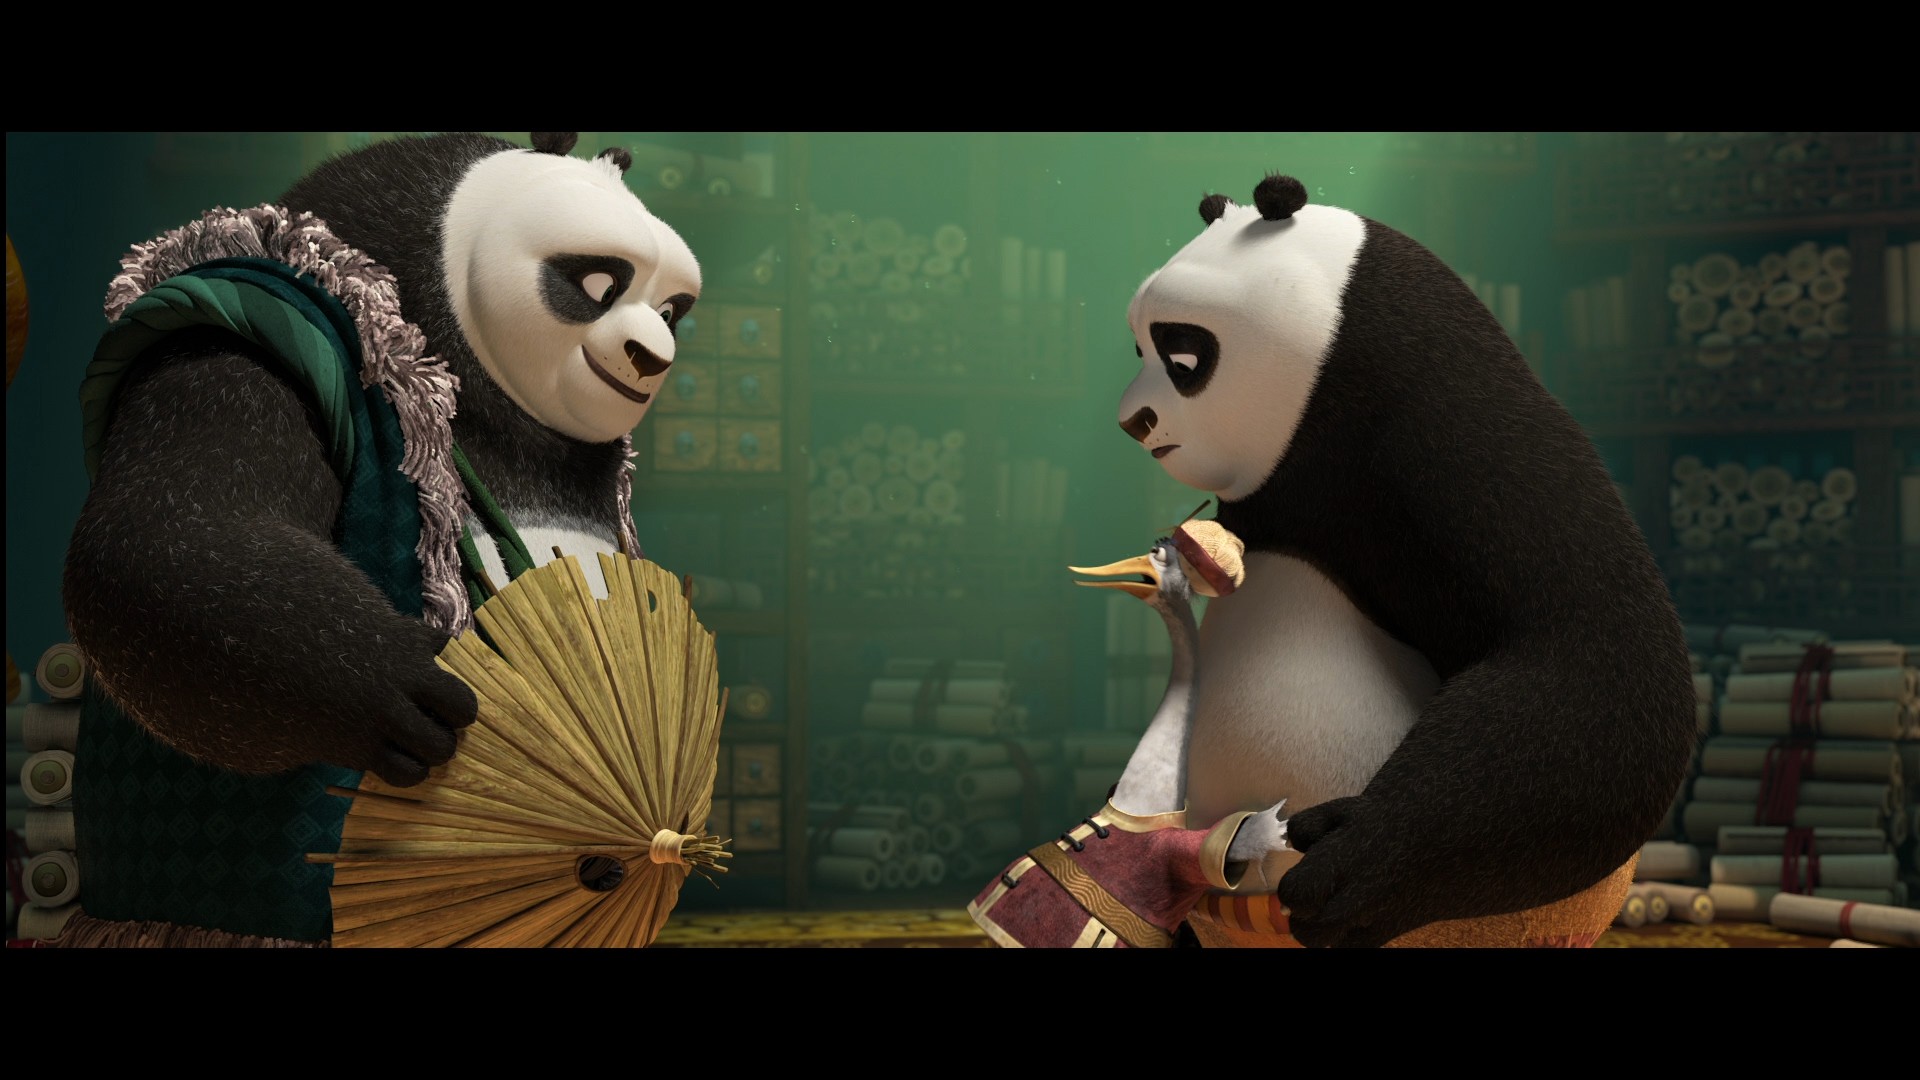 [功夫熊猫3].Kung.Fu.Panda.3.2016.HK.3D.BluRay.1080p.AVC.DTS-HD.MA.7.1-TTG   37.03G-6.jpg